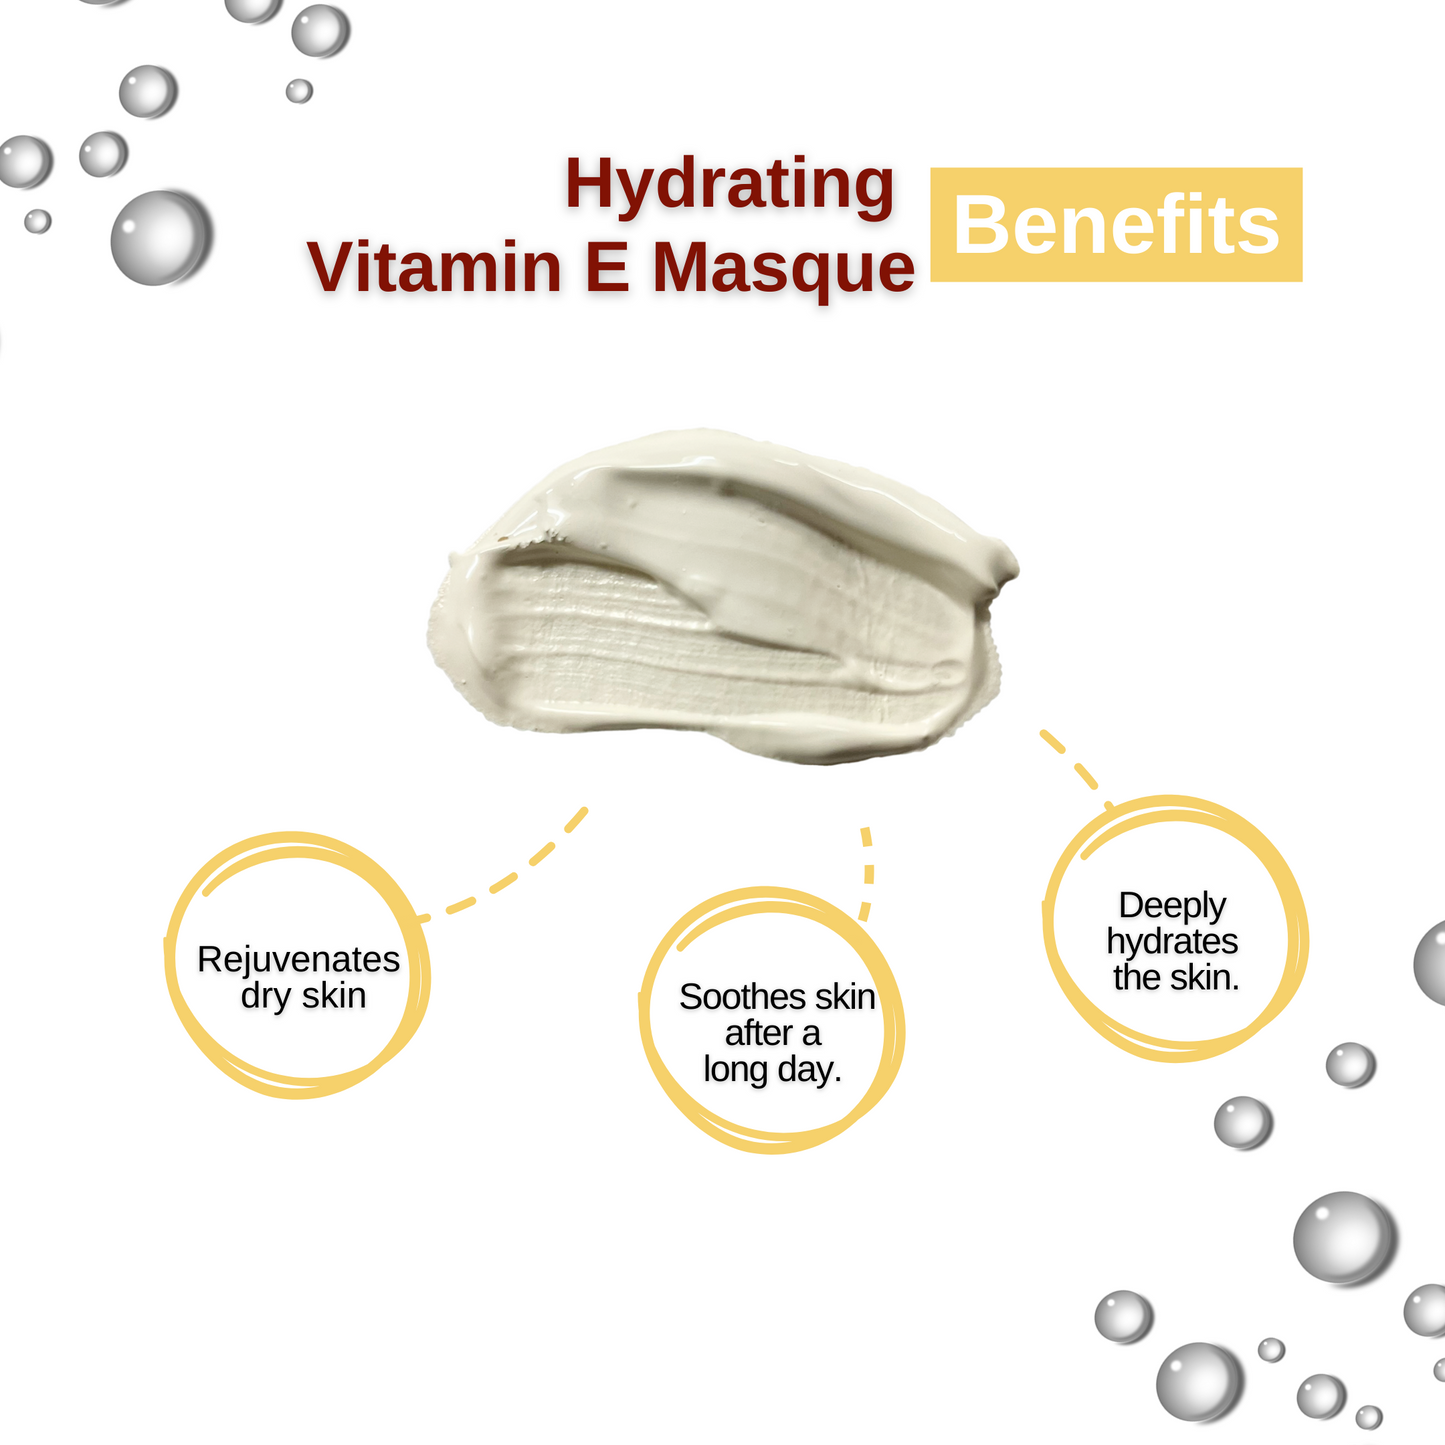 Hydrating Vitamin E Masque